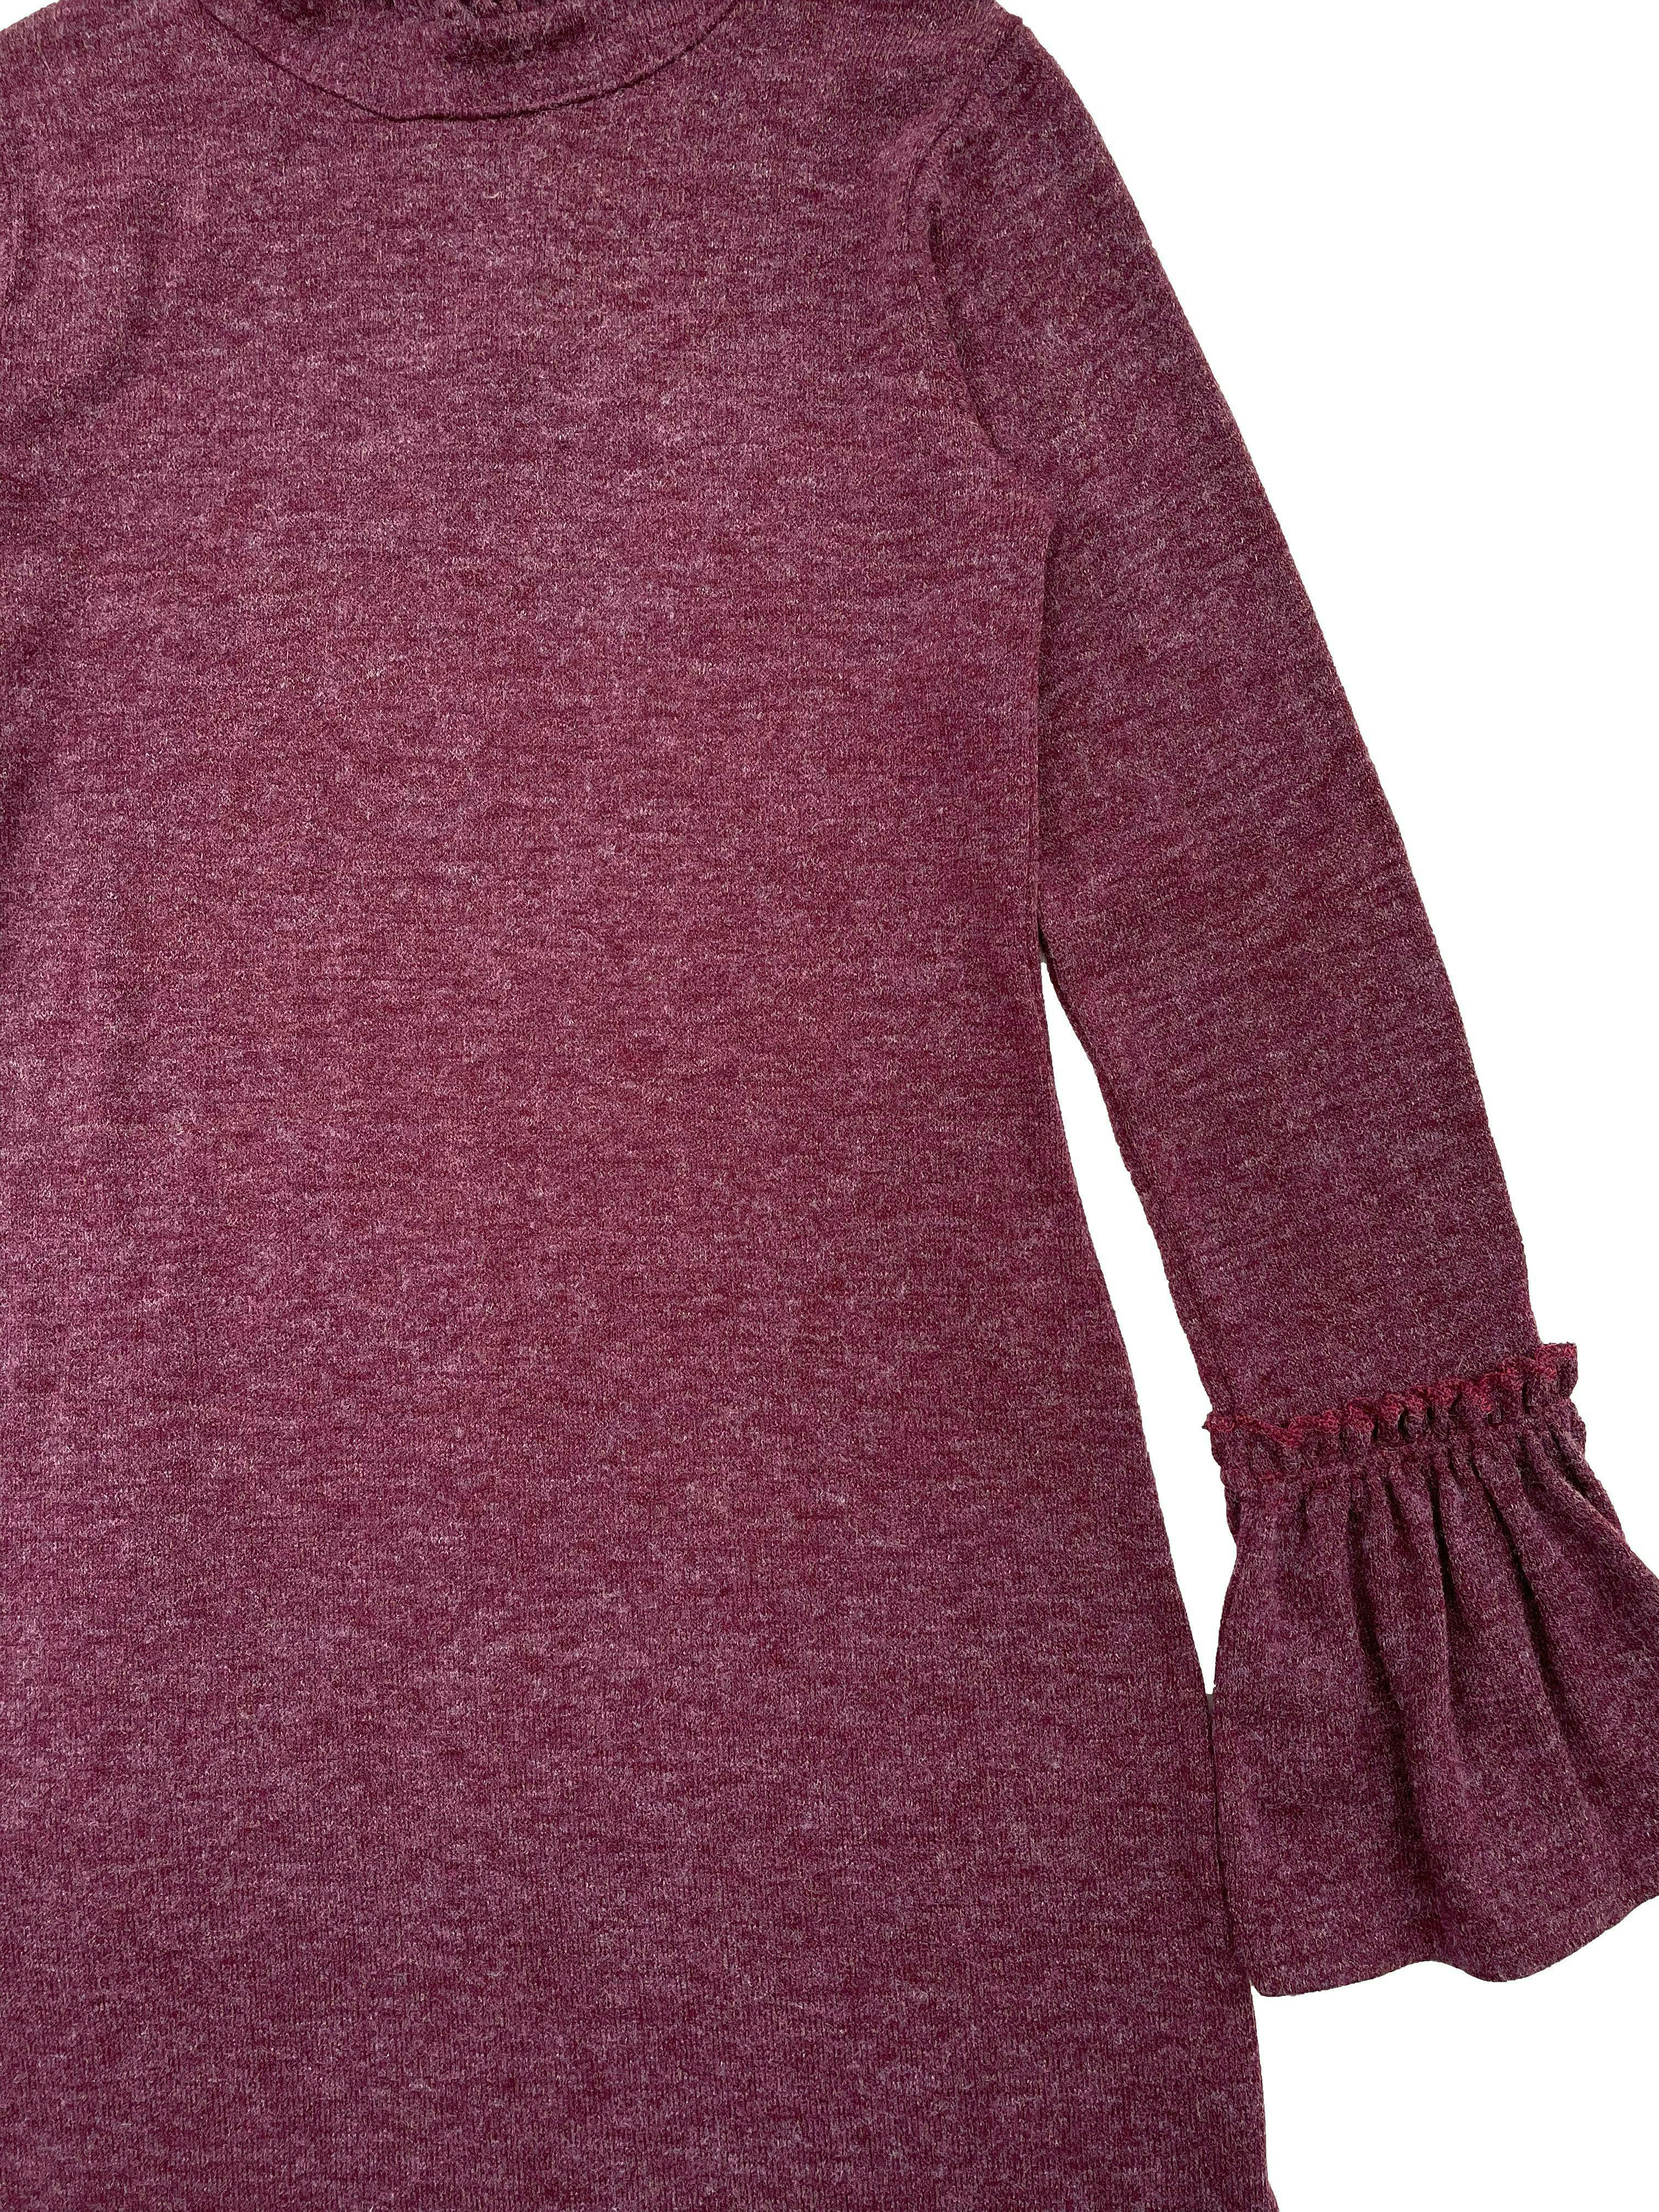 Vestido knit vino jaspeado de tejido delgado, volantes en cuello y mangas, abertura posterior con botones. Busto 80cm sin estirar, Largo 90cm.